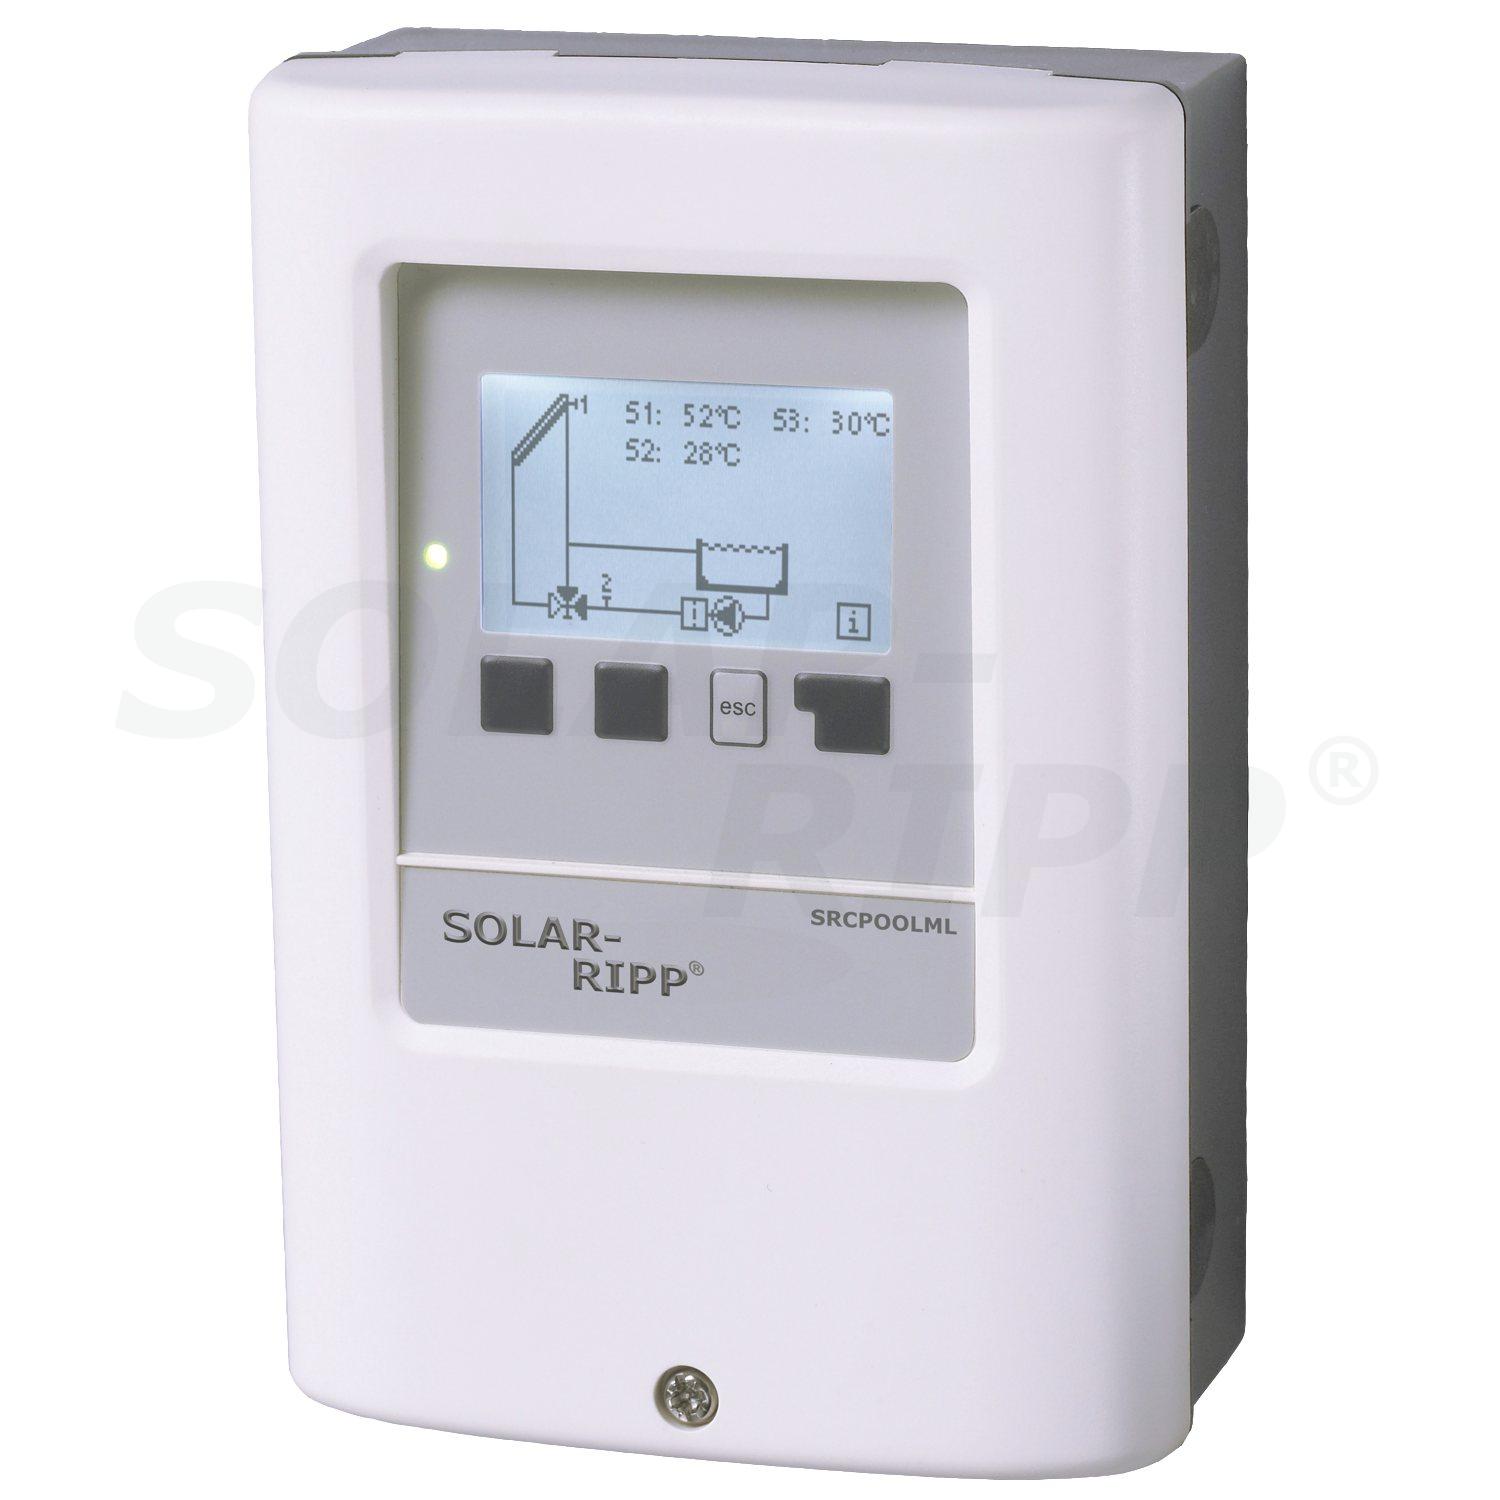 SOLAR-RIPP ® Solar Kontrol Cihazı SRCPOOLML...